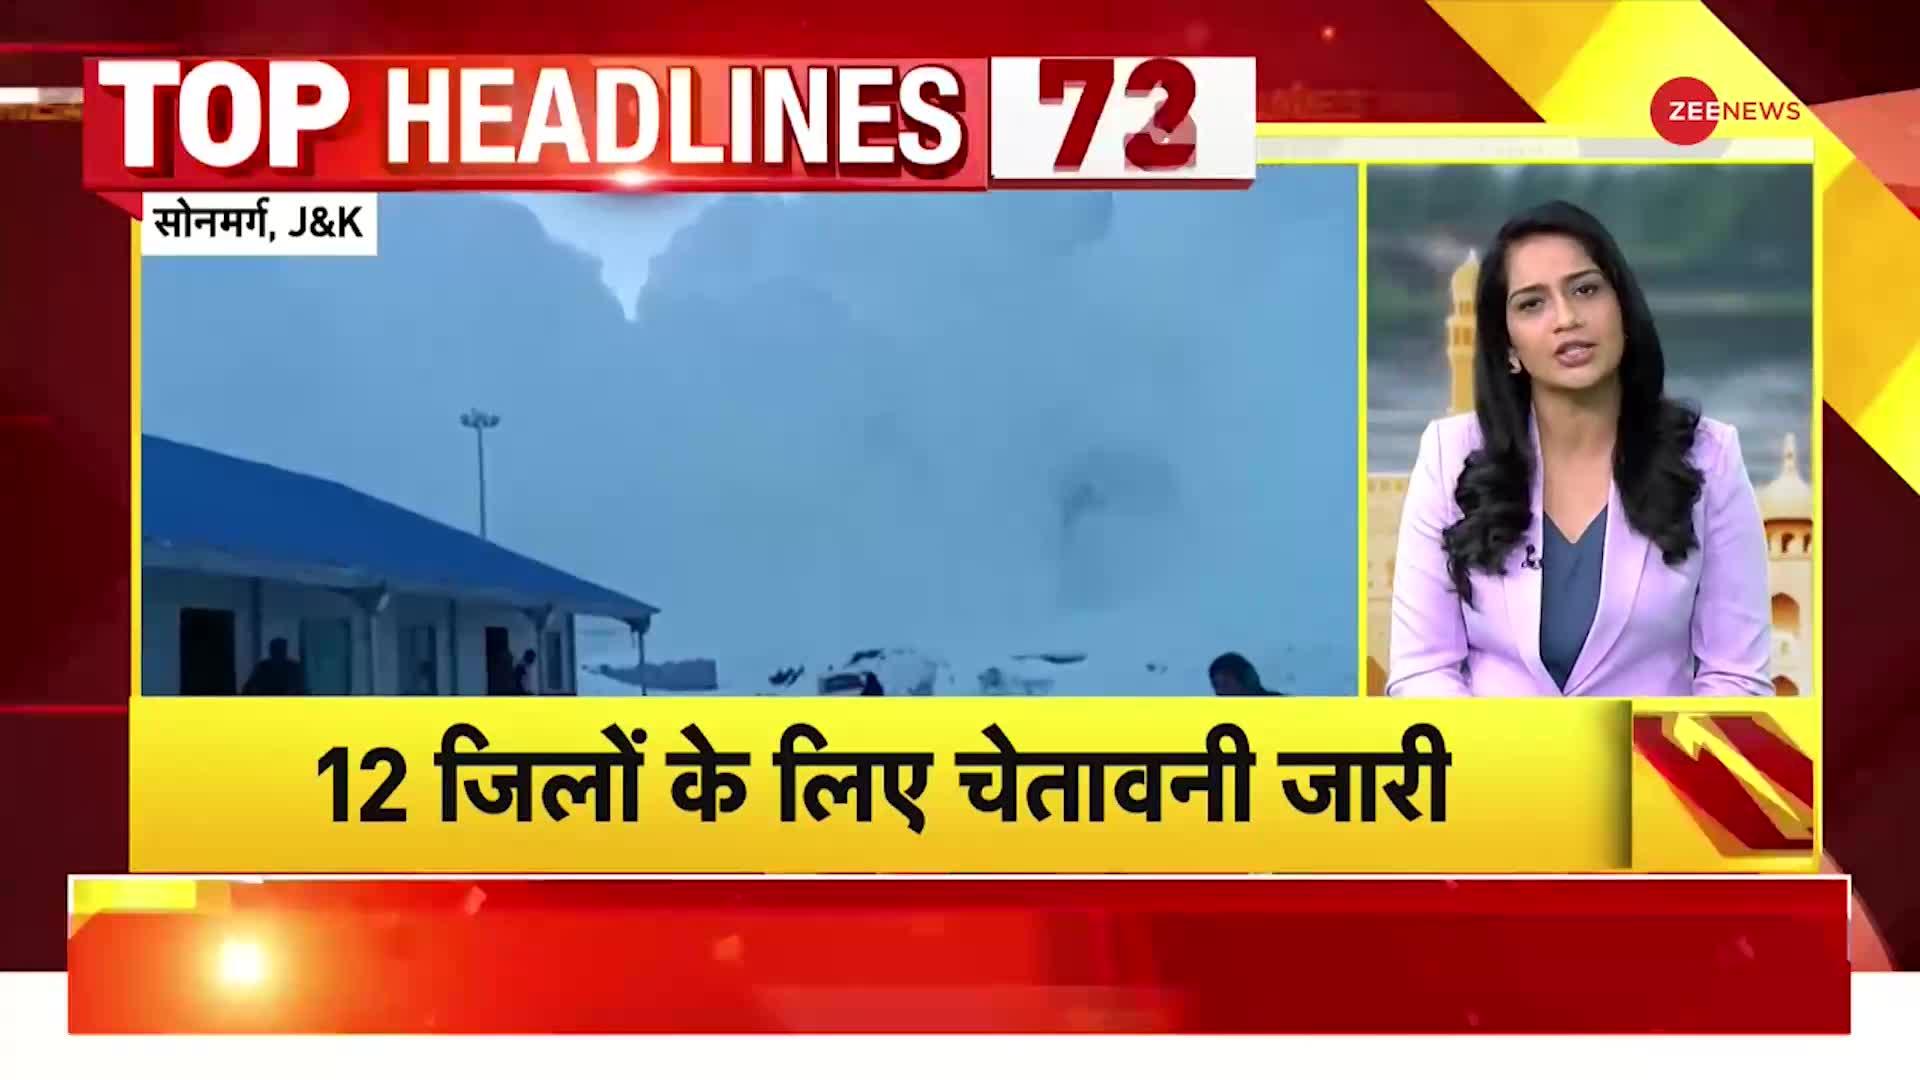 Top Headlines: दिल्ली में ठंड और प्रदूषण का प्रकोप, देश को मिलेगी 8वीं वंदे भारत ट्रेन